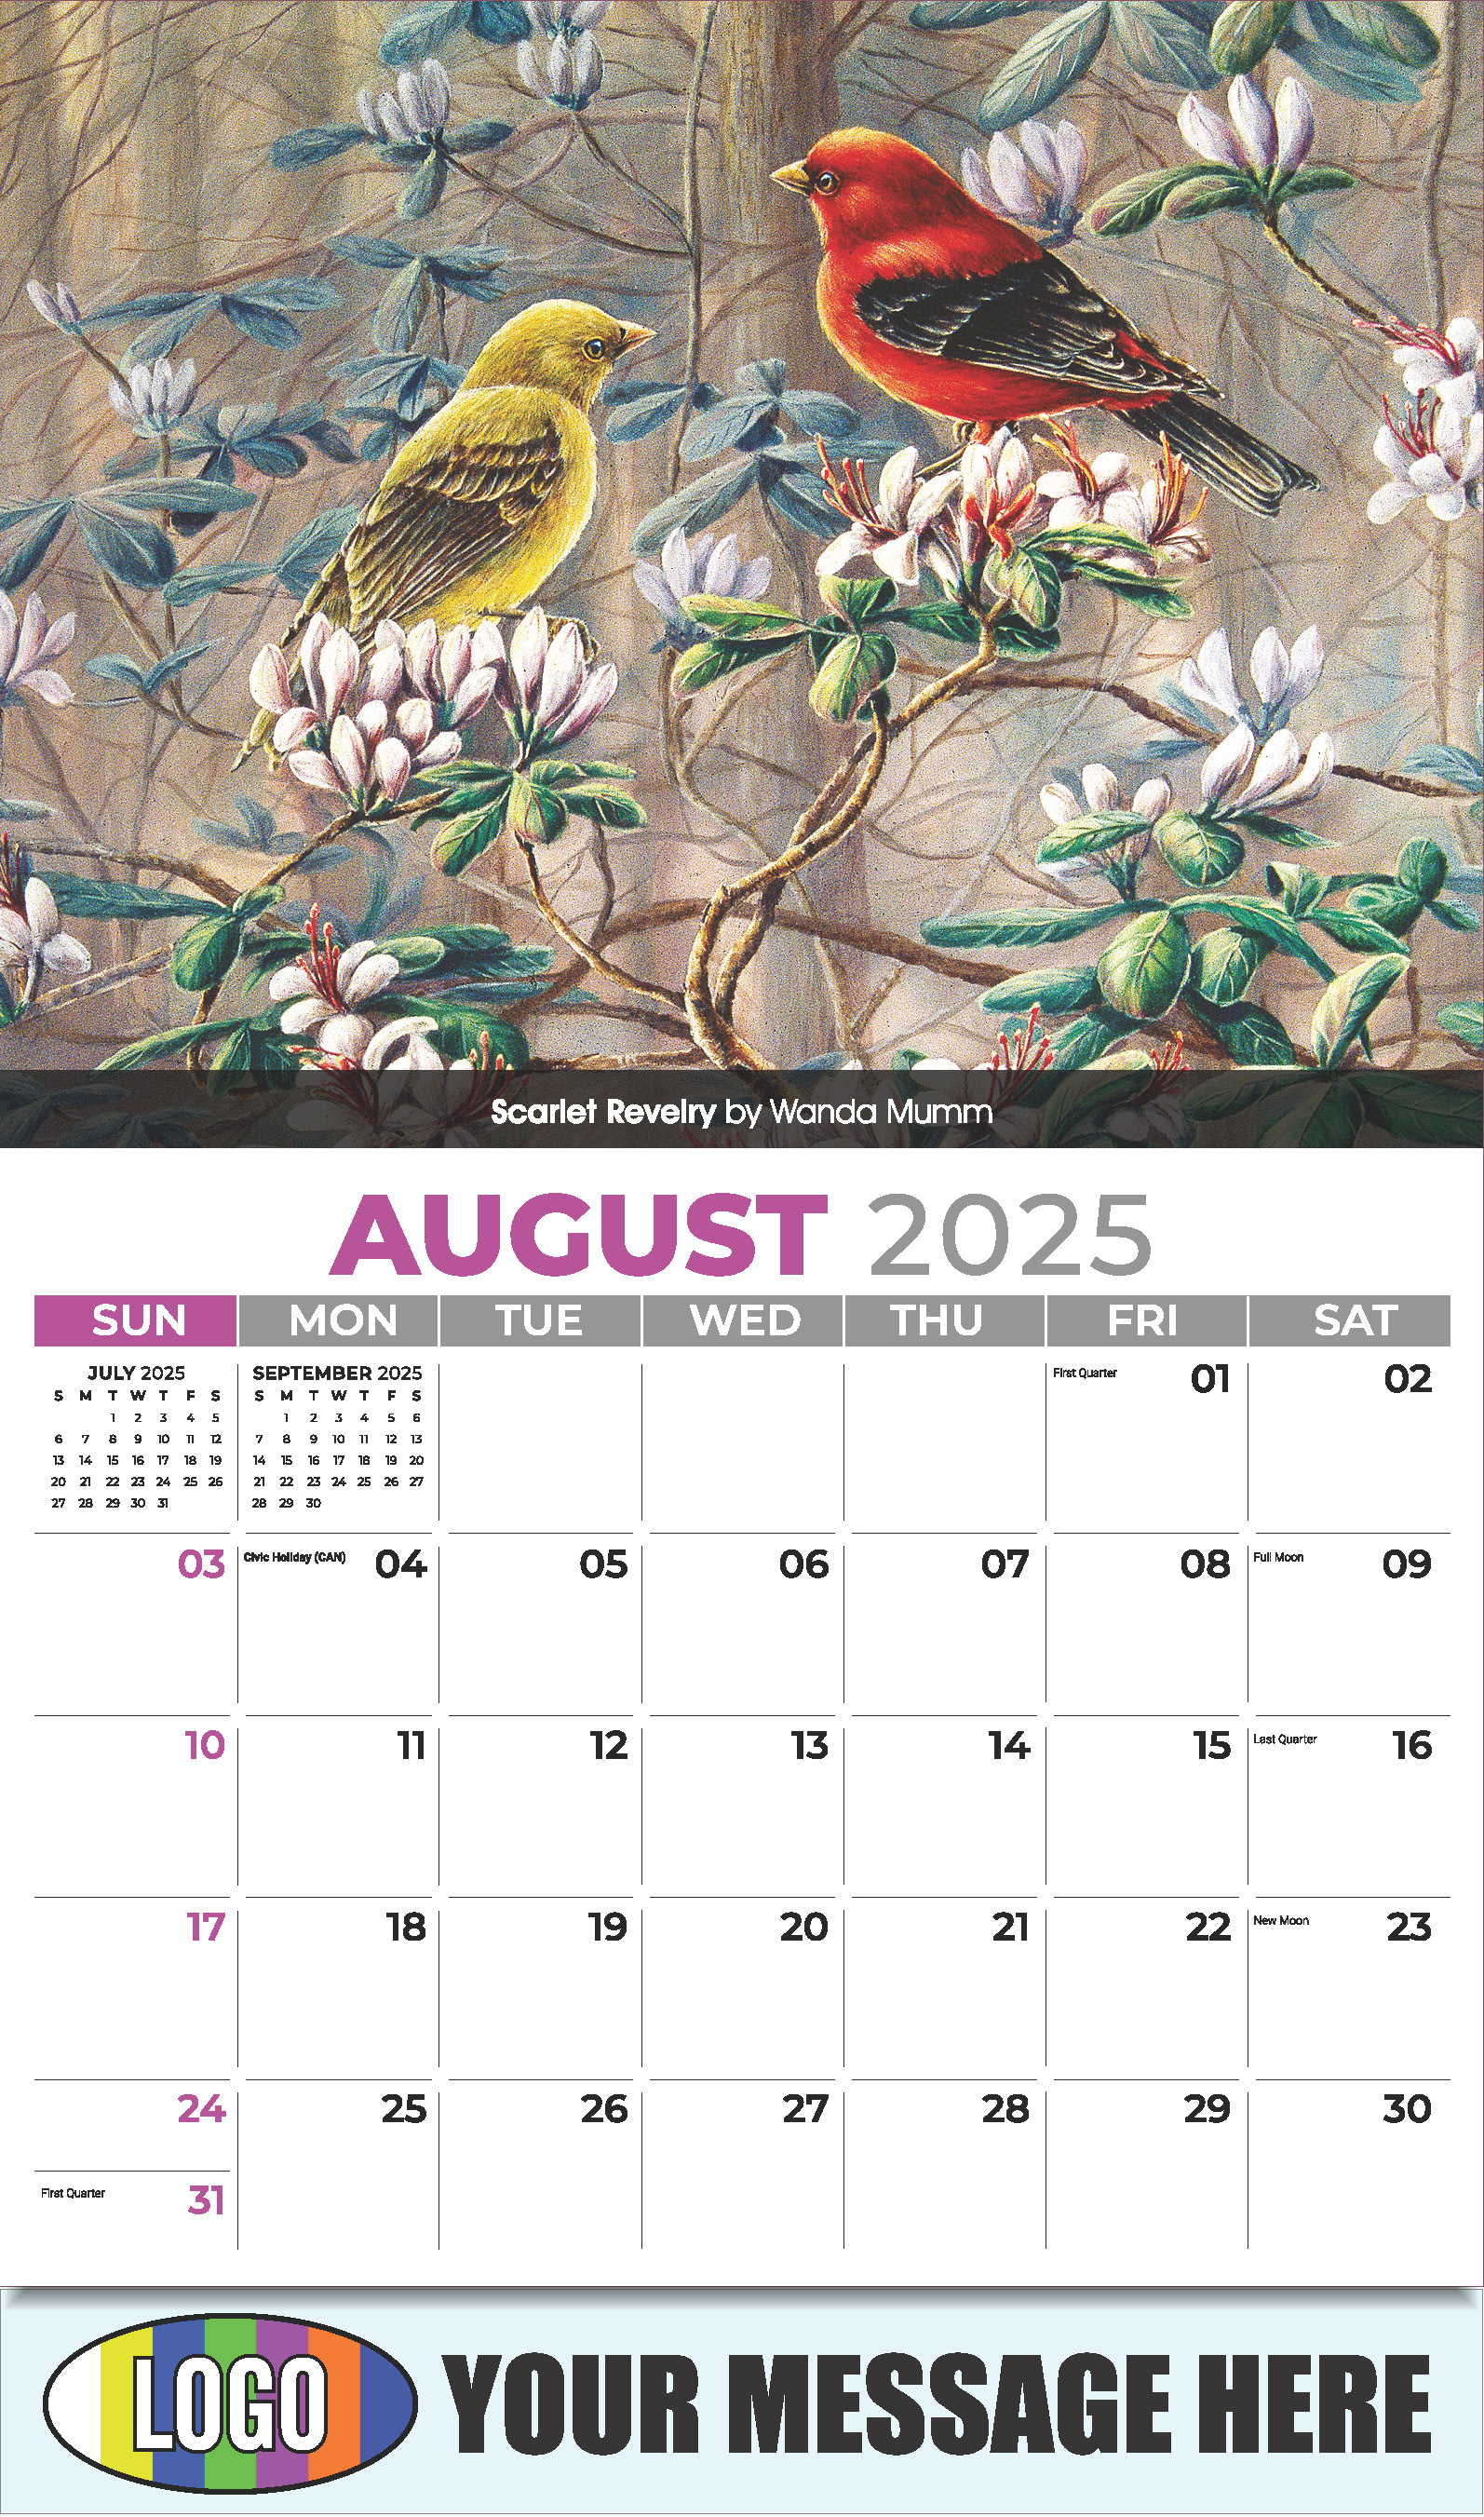 Garden Birds 2025 Business Promotional Calendar - August